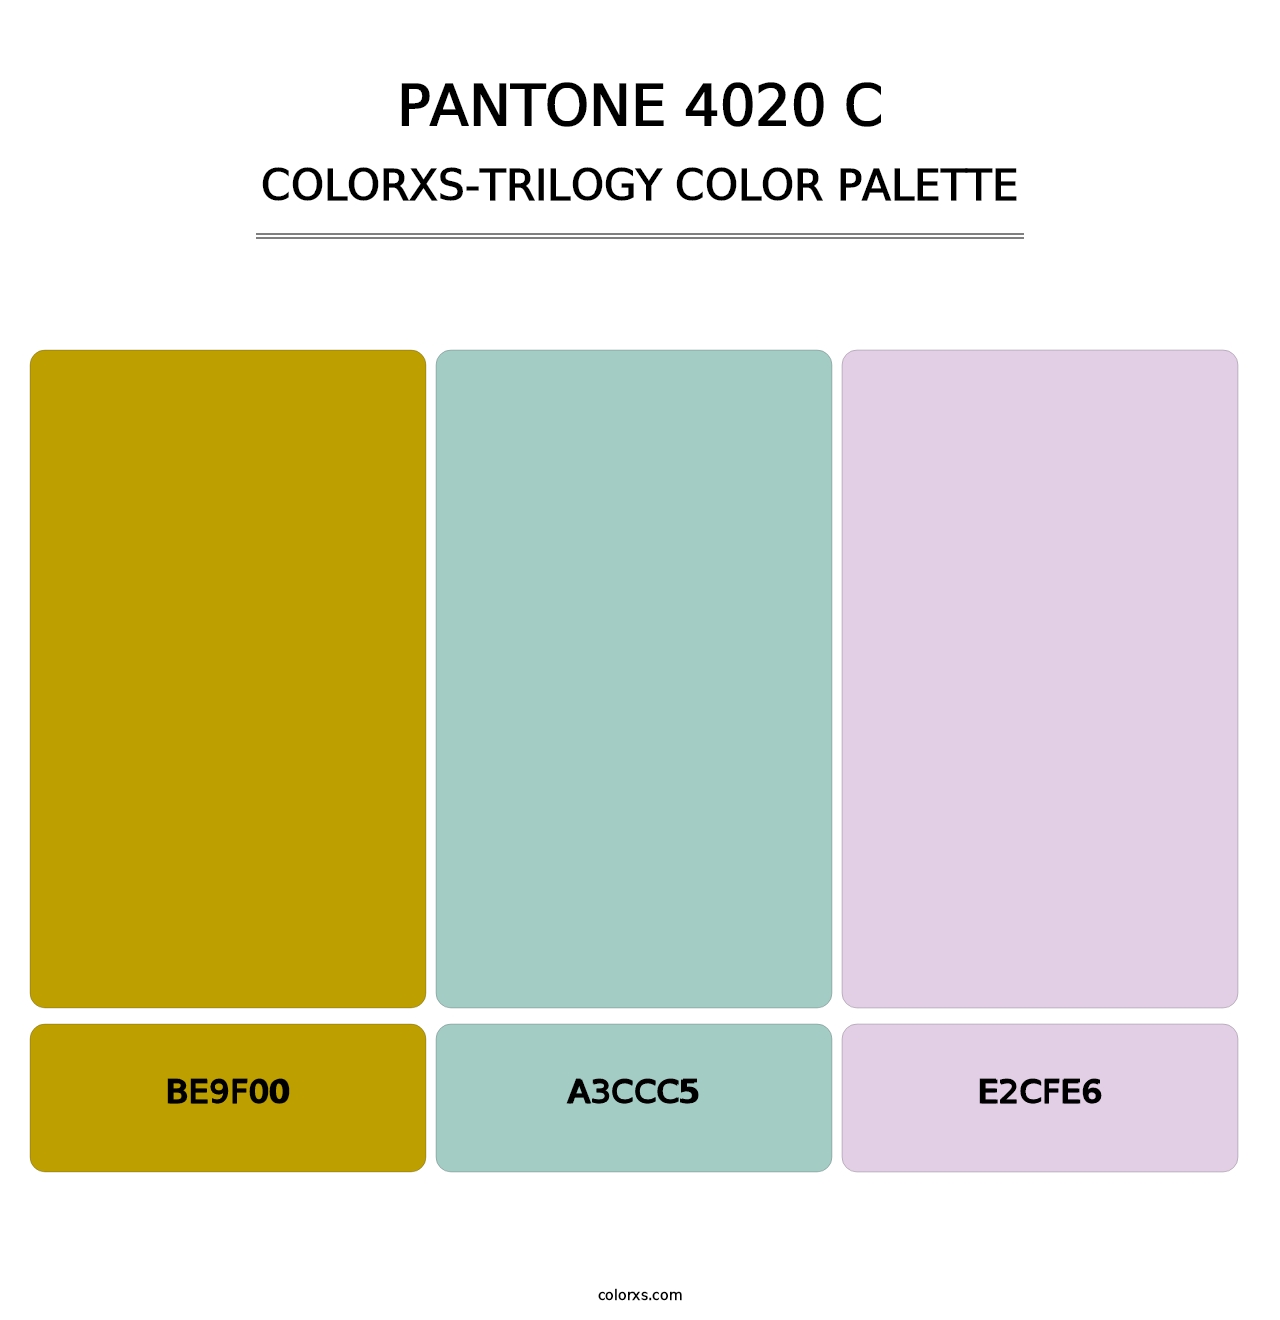 PANTONE 4020 C - Colorxs Trilogy Palette